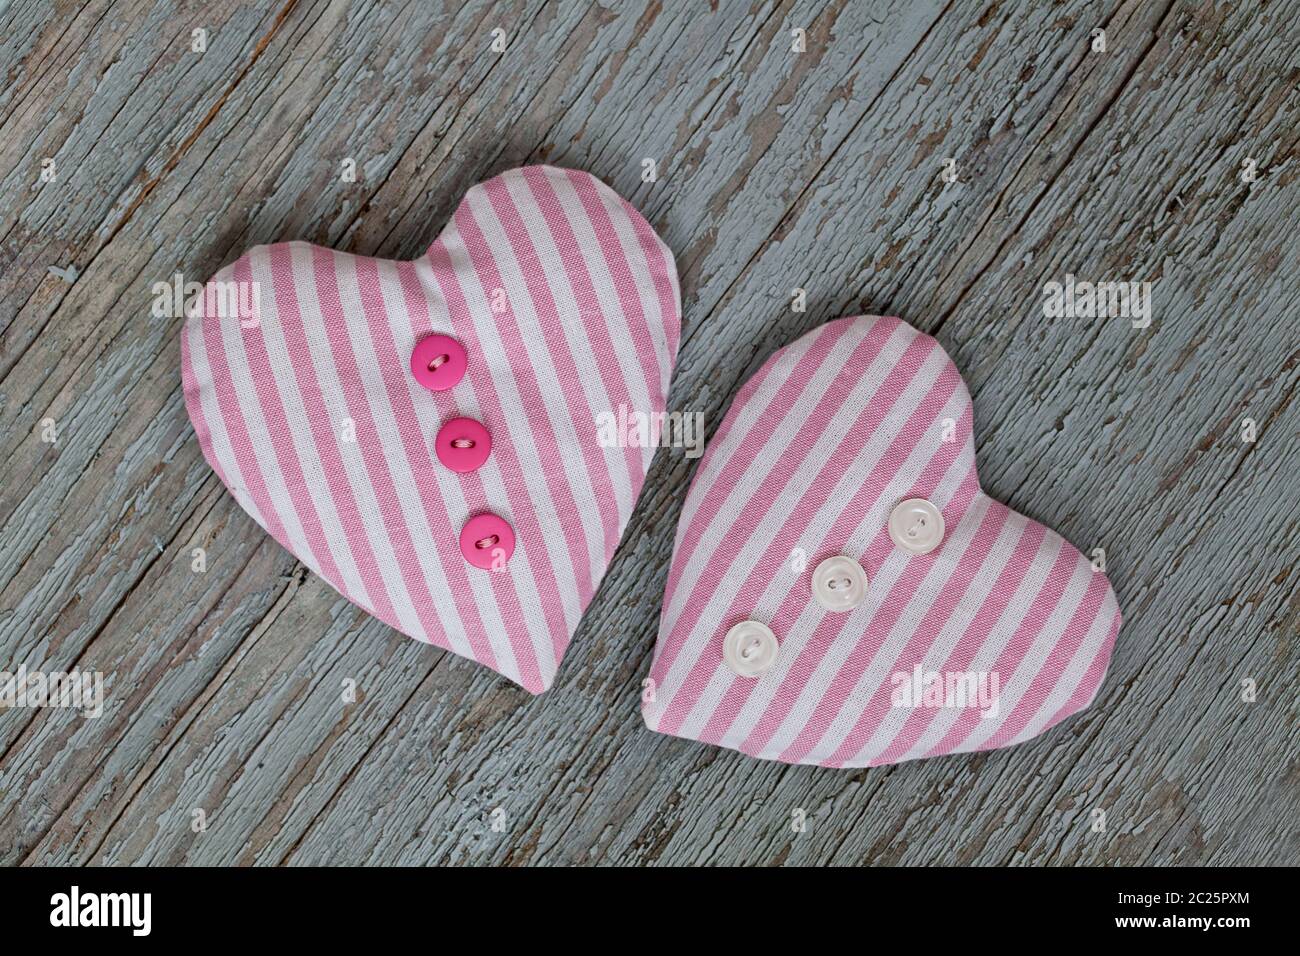 Handgefertigte Stoff Herzen aus rosa Stippstoff mit niedlichen kleinen Knöpfen, perfekt für eine Grußkarte Stockfoto